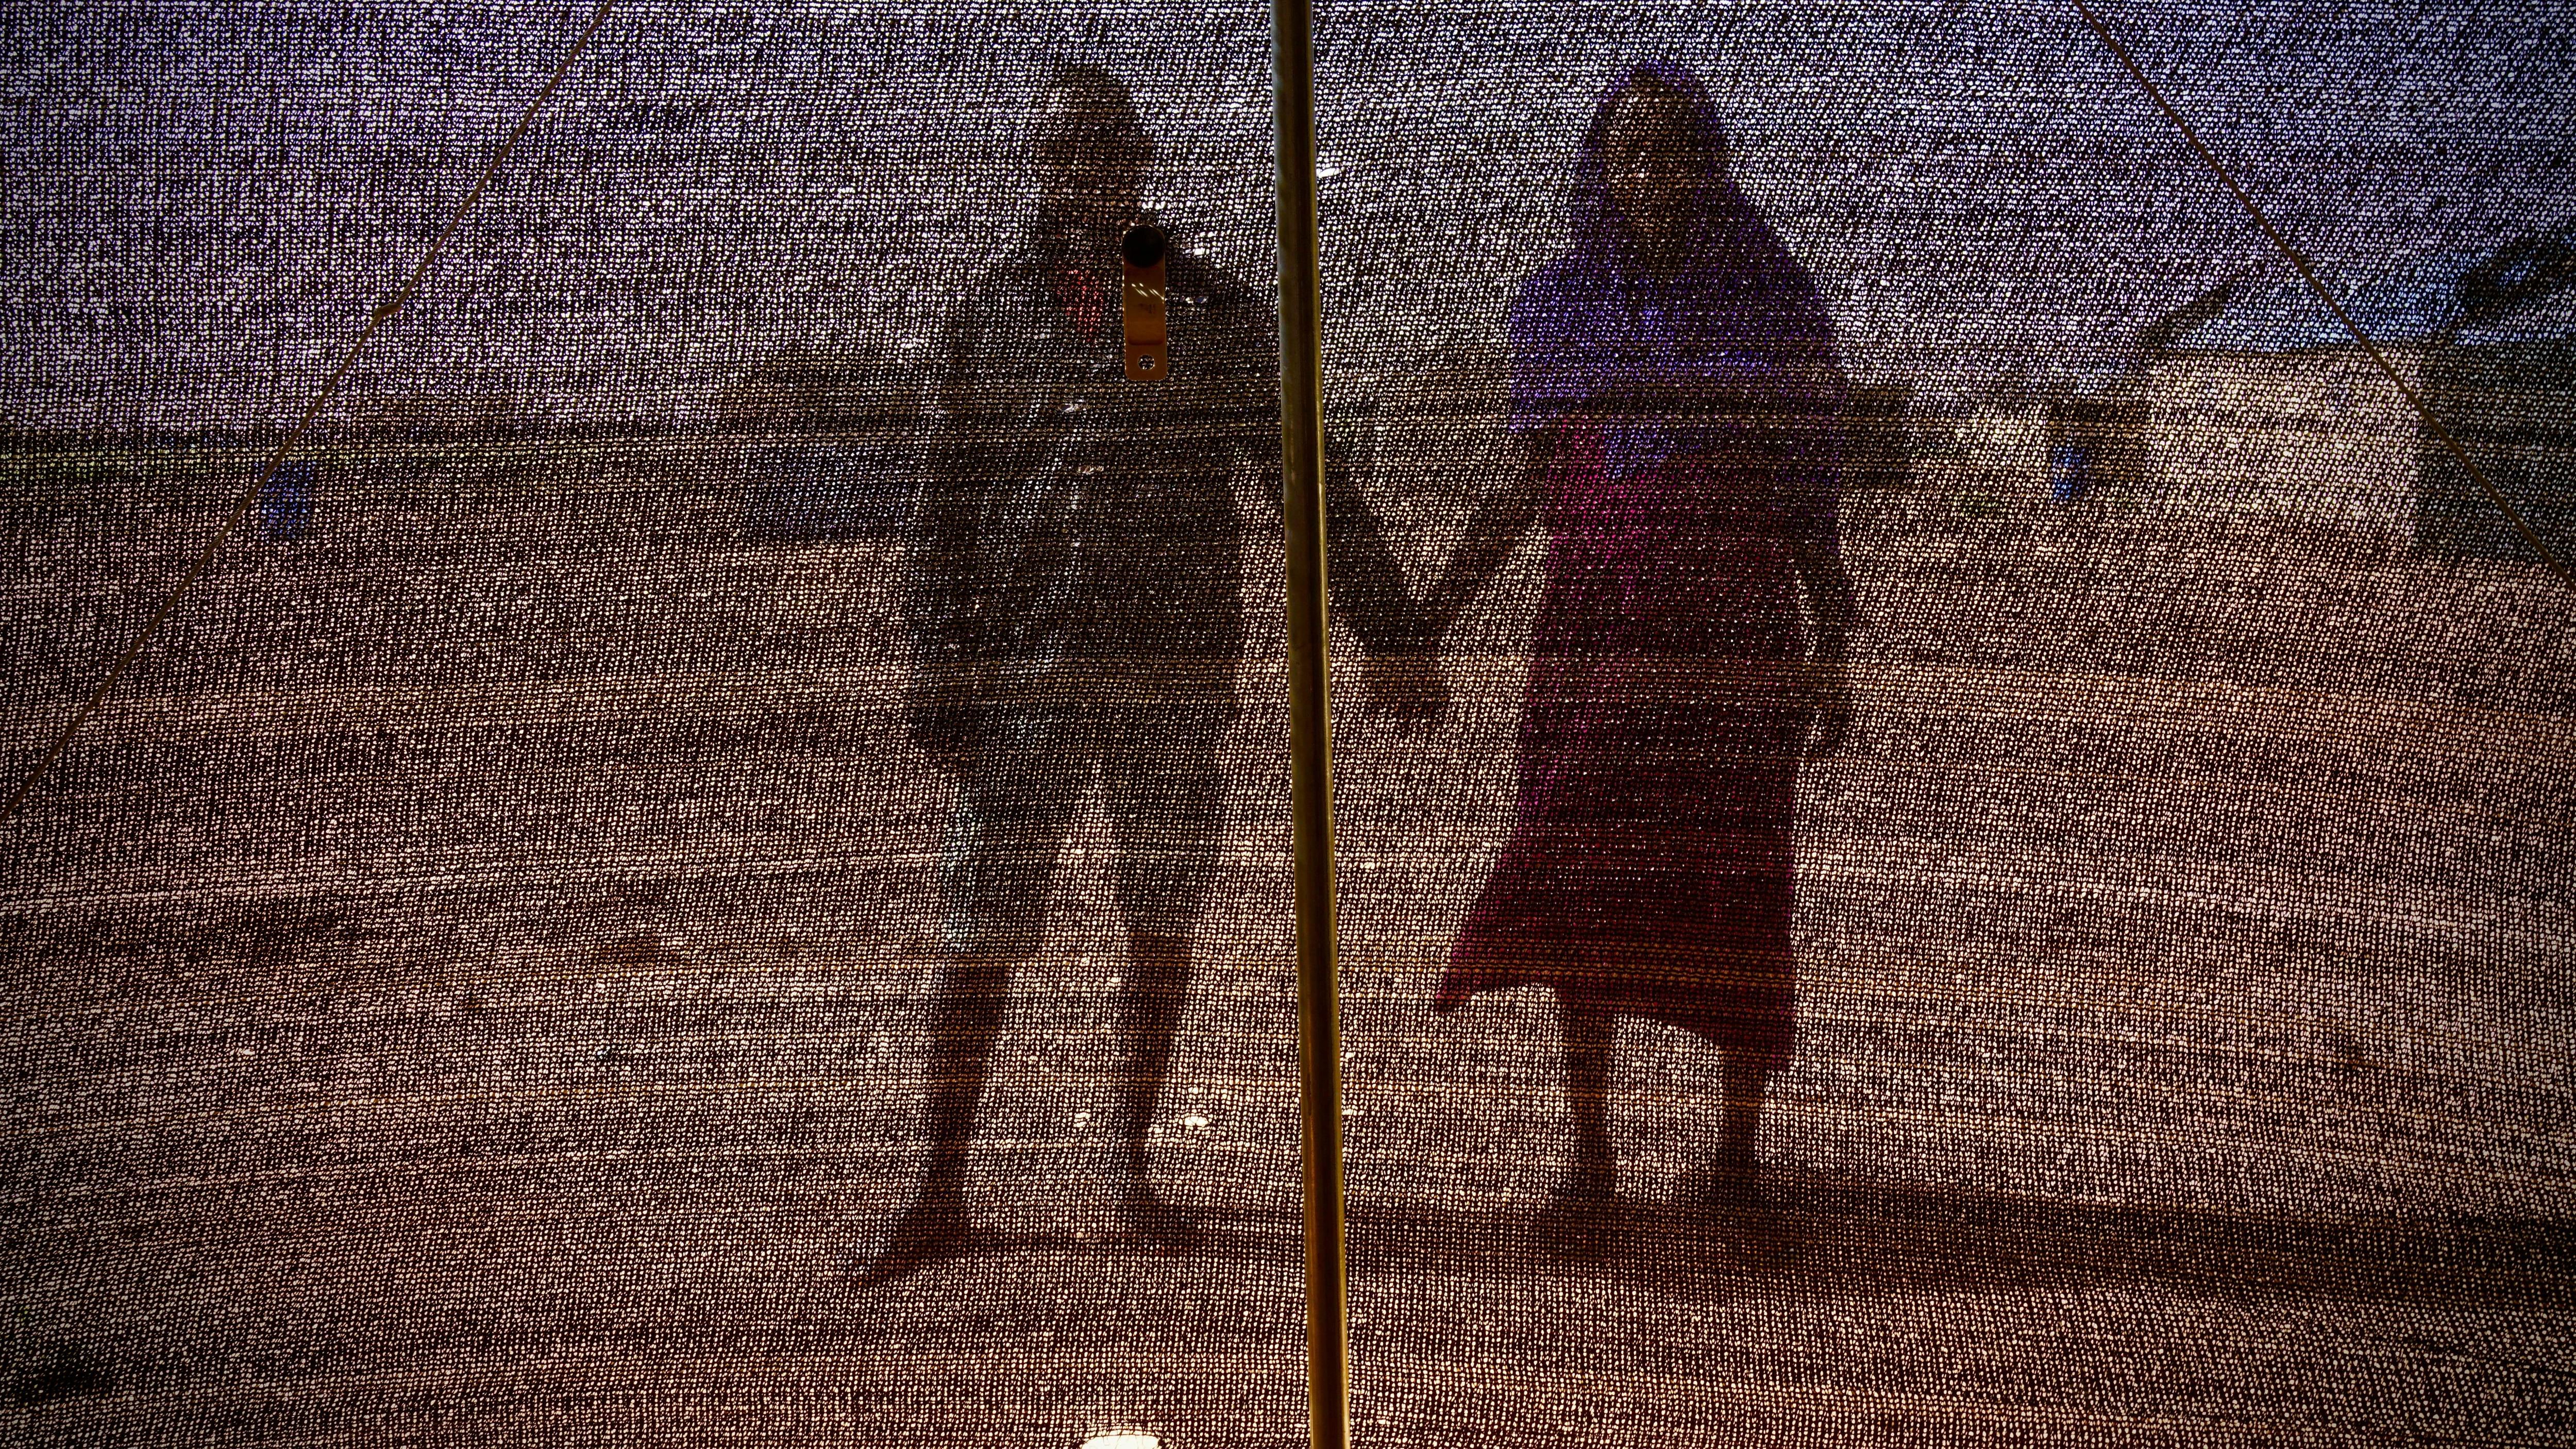 Zwei geflüchtete Menschen in Niger, scheinbar ein heterosexuelles Paar, halten Händchen, wir sehen ihre Silhouette durch ein schwarzes Maschennetz.